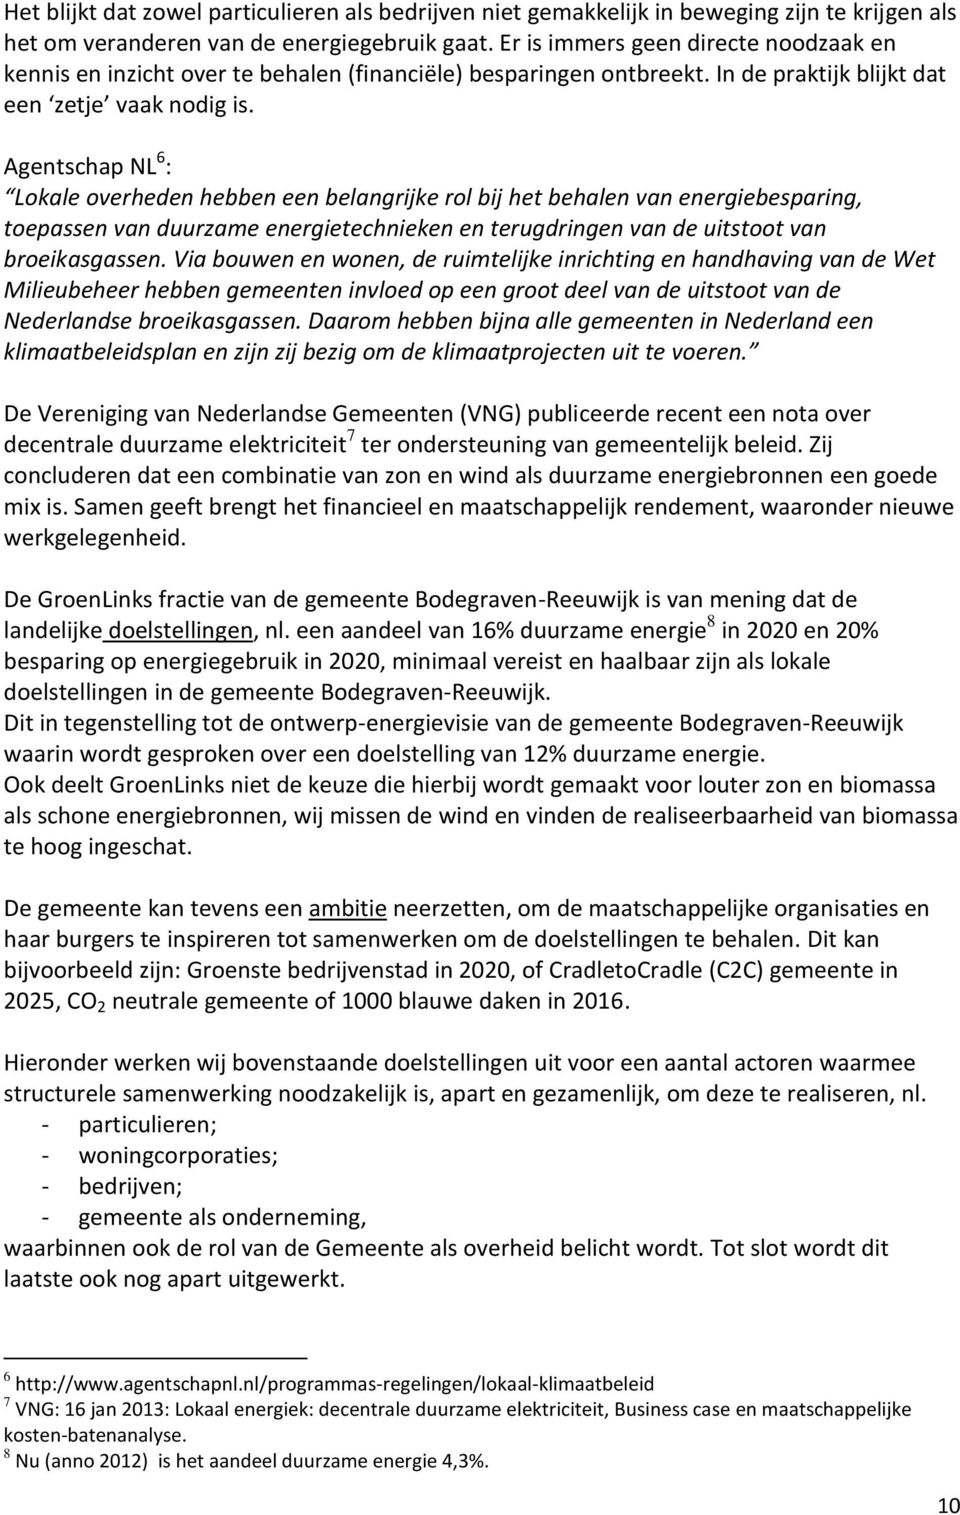 Agentschap NL 6 : Lokale overheden hebben een belangrijke rol bij het behalen van energiebesparing, toepassen van duurzame energietechnieken en terugdringen van de uitstoot van broeikasgassen.